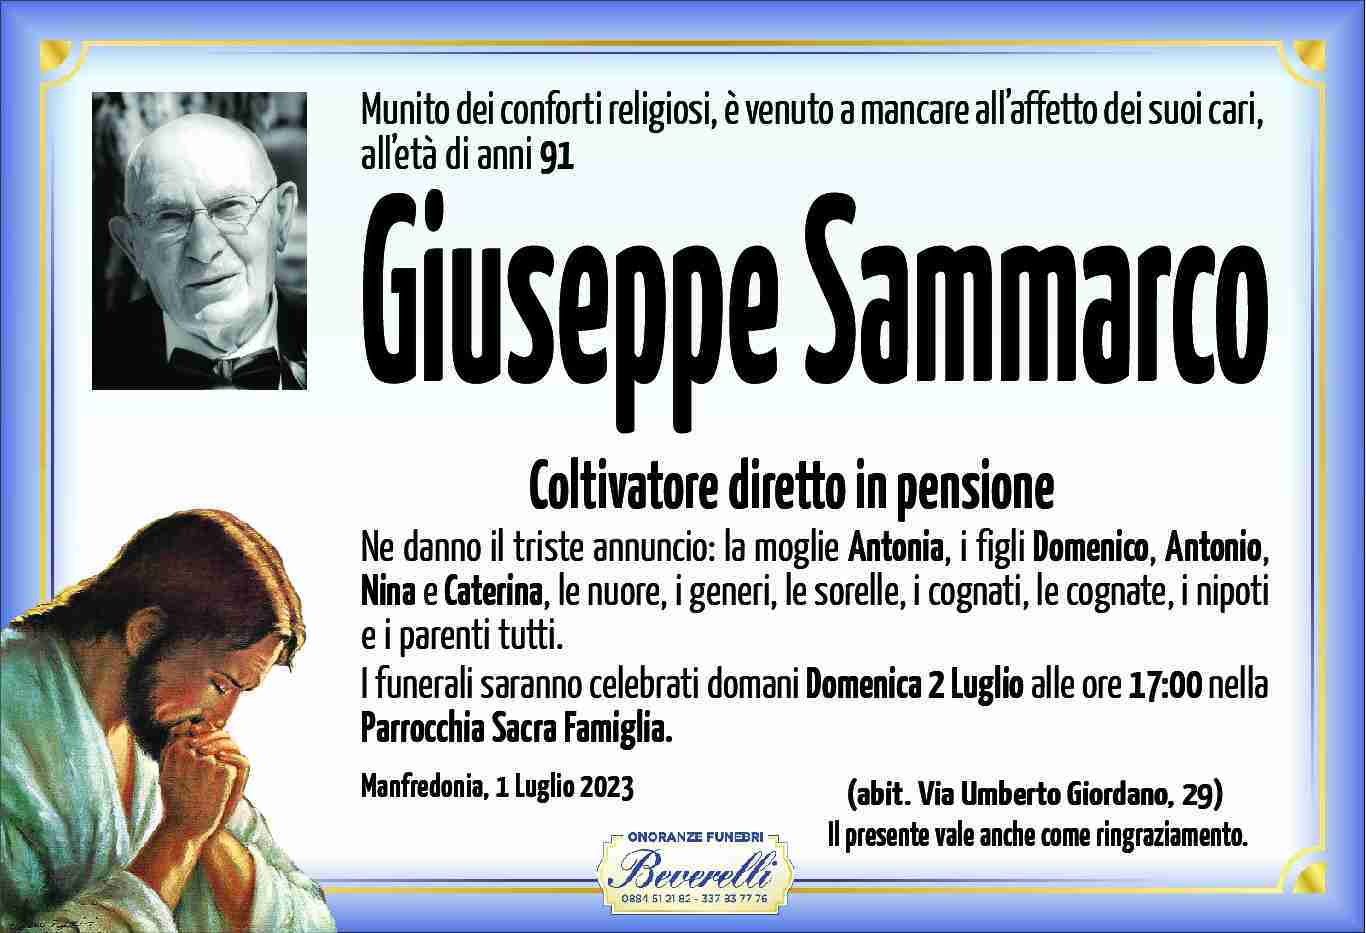 Giuseppe Sammarco